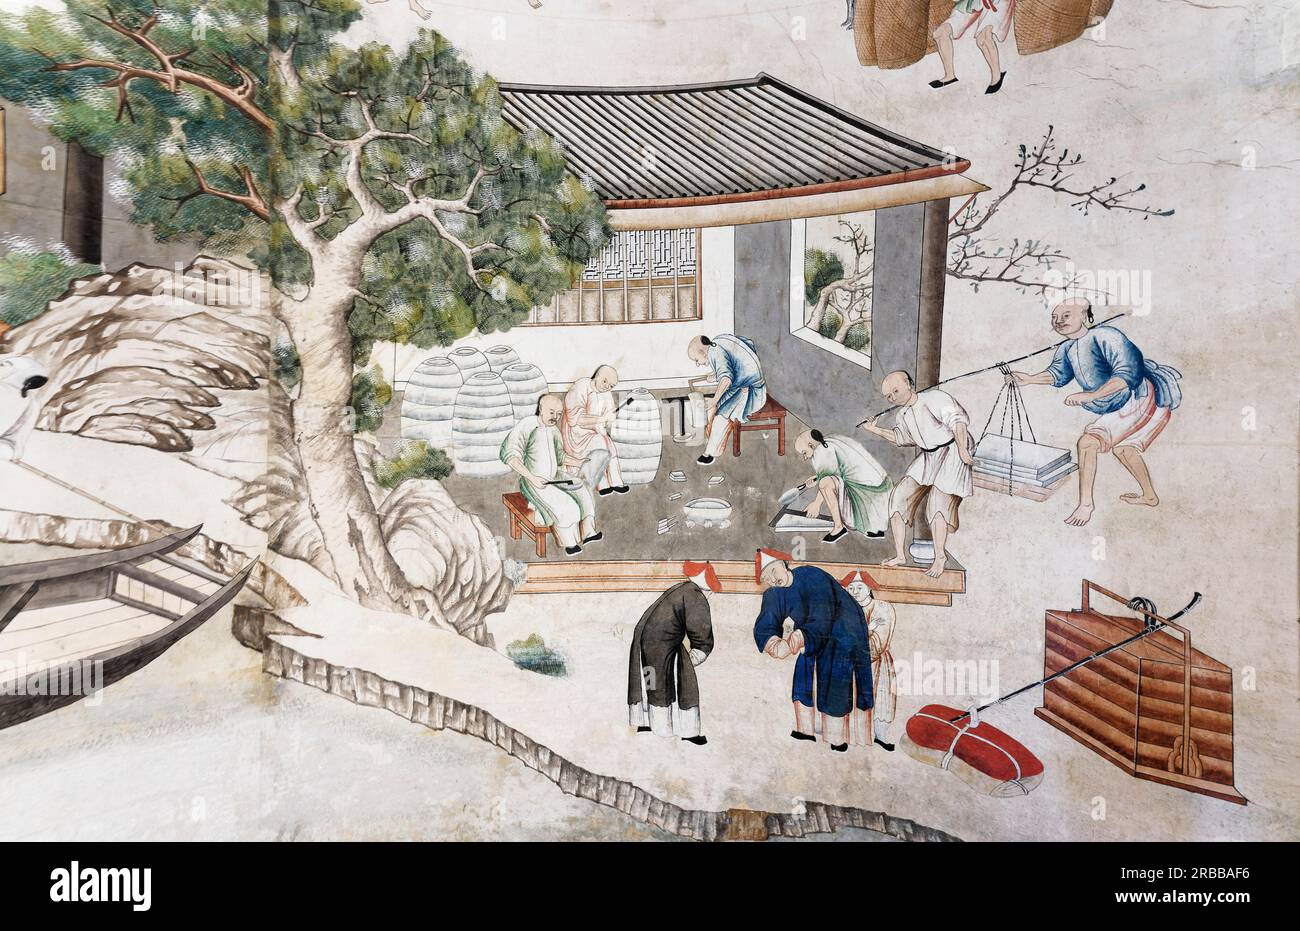 Dettaglio di carta da parati cinese della vita artigianale cinese, Chinoiserie, sala cinese, XVIII secolo, Castello, Castello Govone Foto Stock